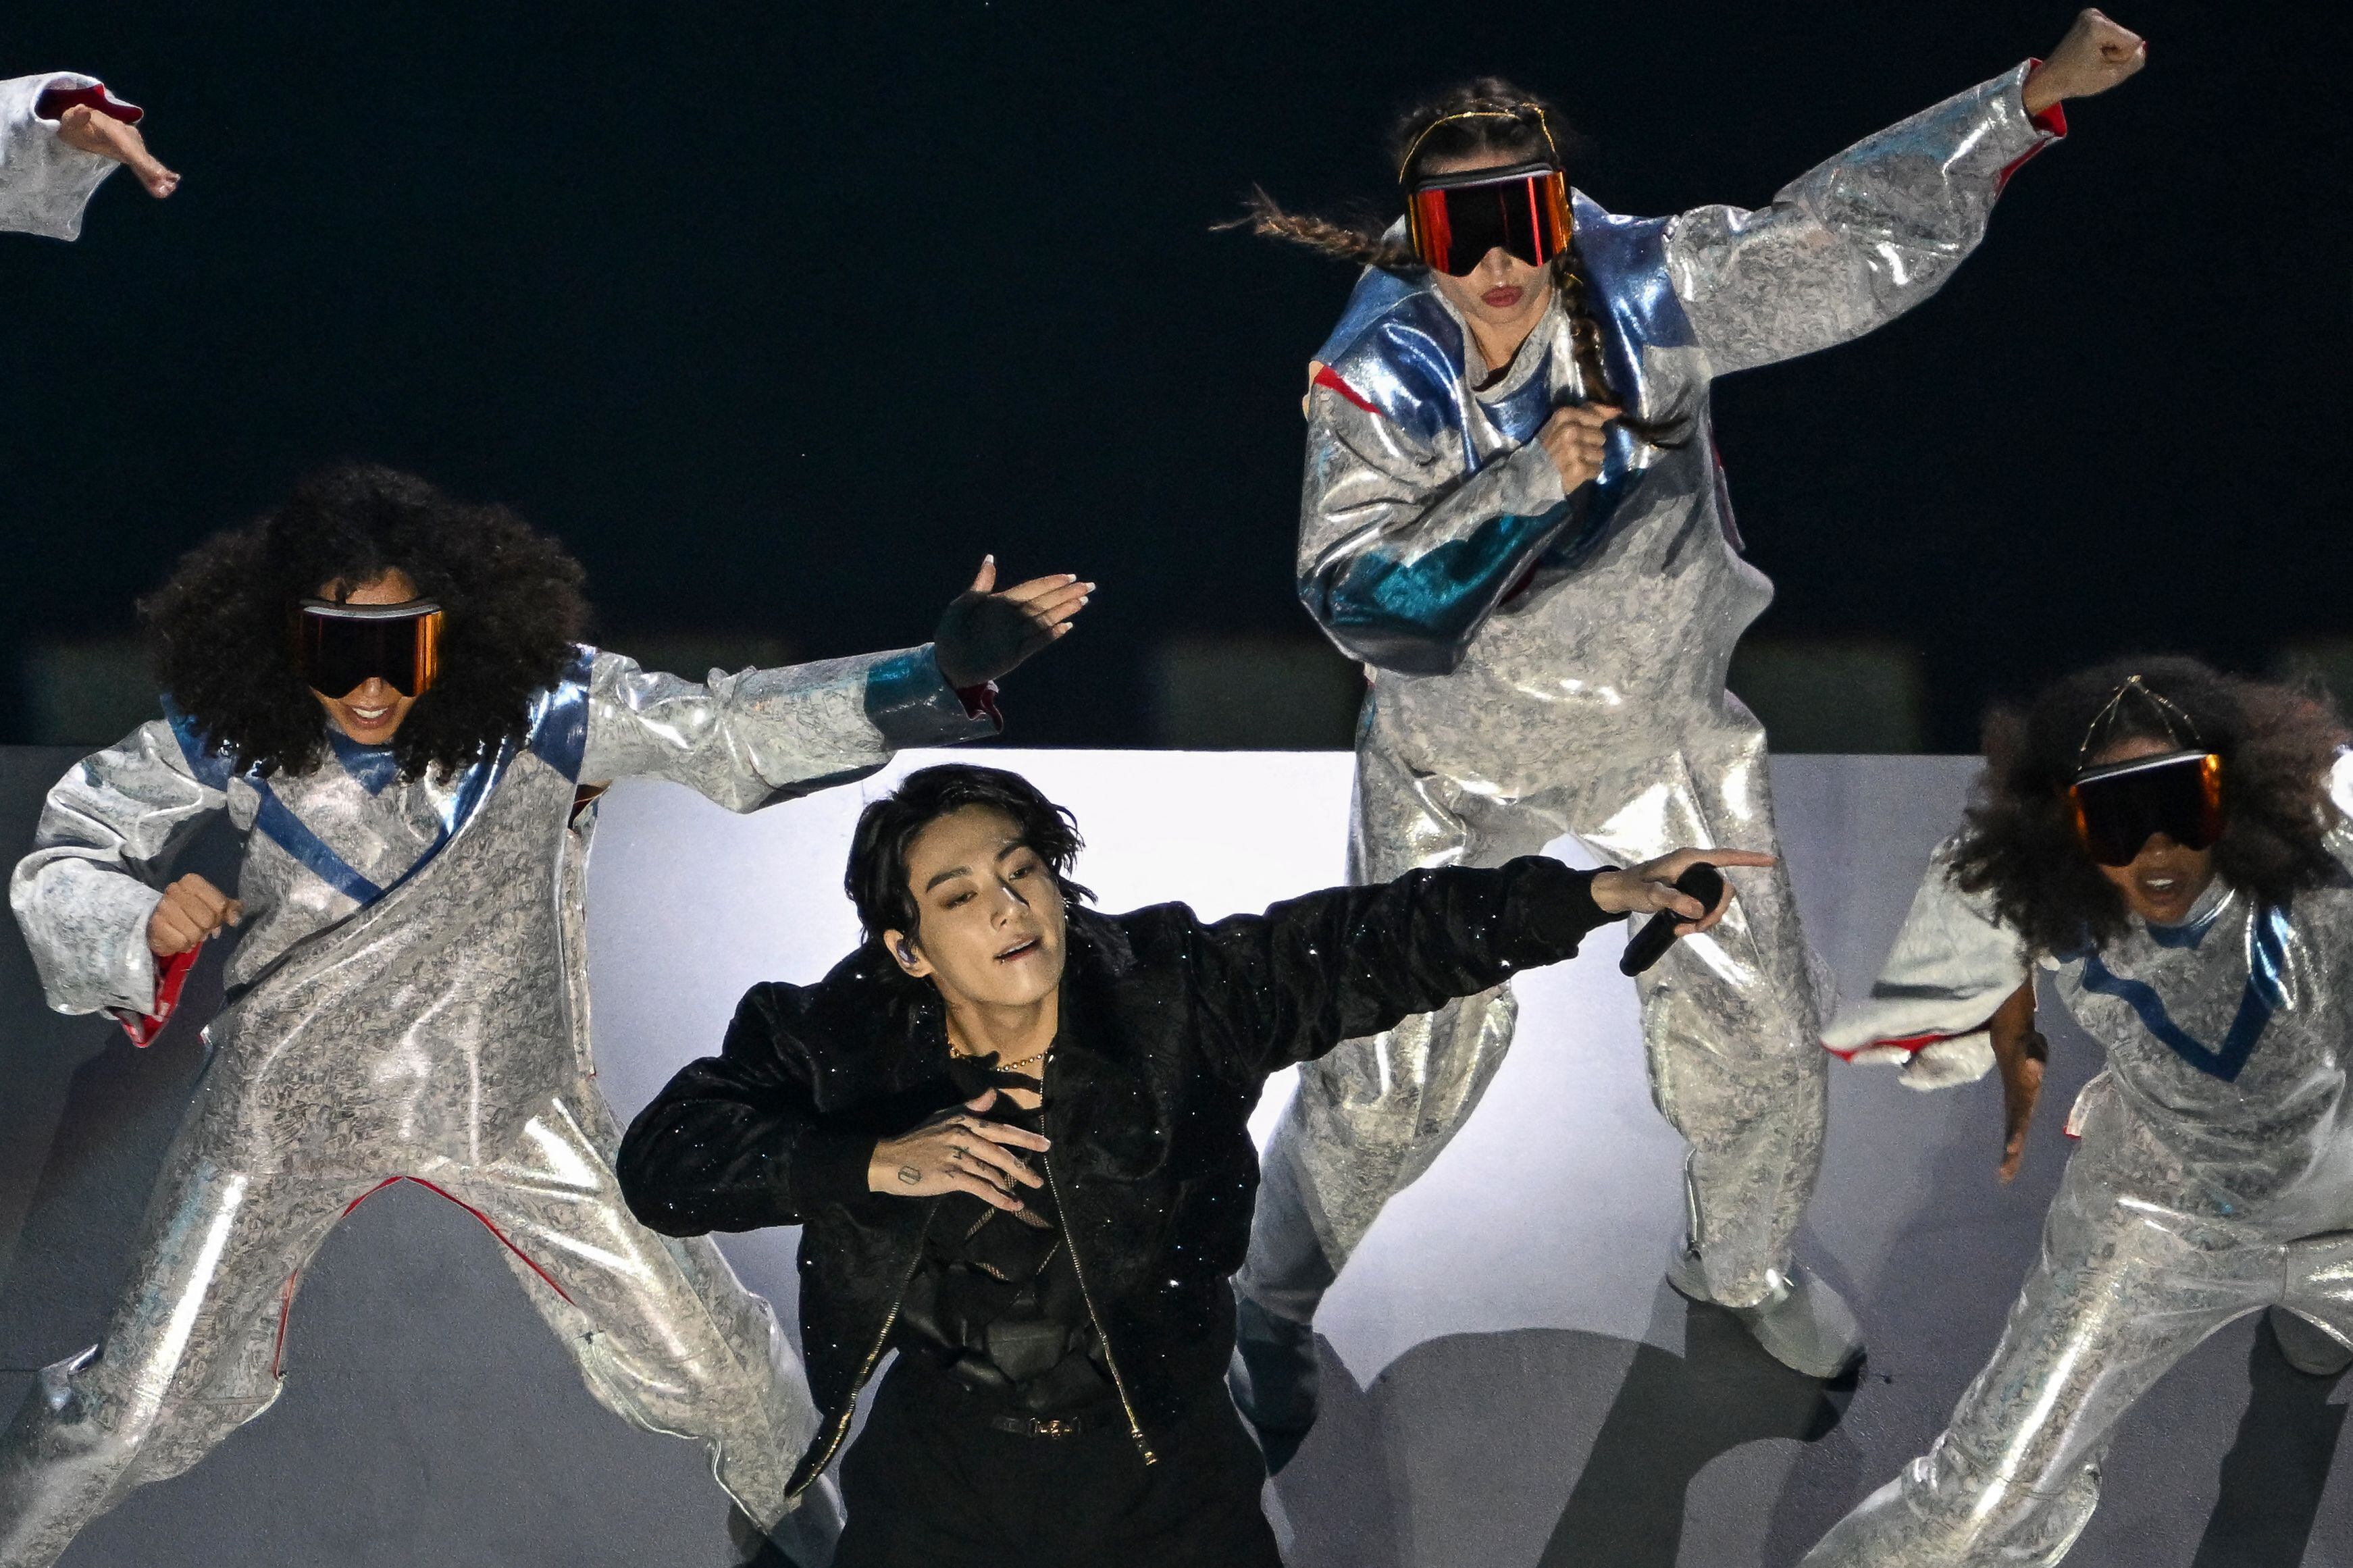 El cantante Jung Kook, integrante del grupo surcoreano BTS, interpretó 'Dreamers', canción incluida en la banda sonora oficial del Mundial de Qatar 2022.